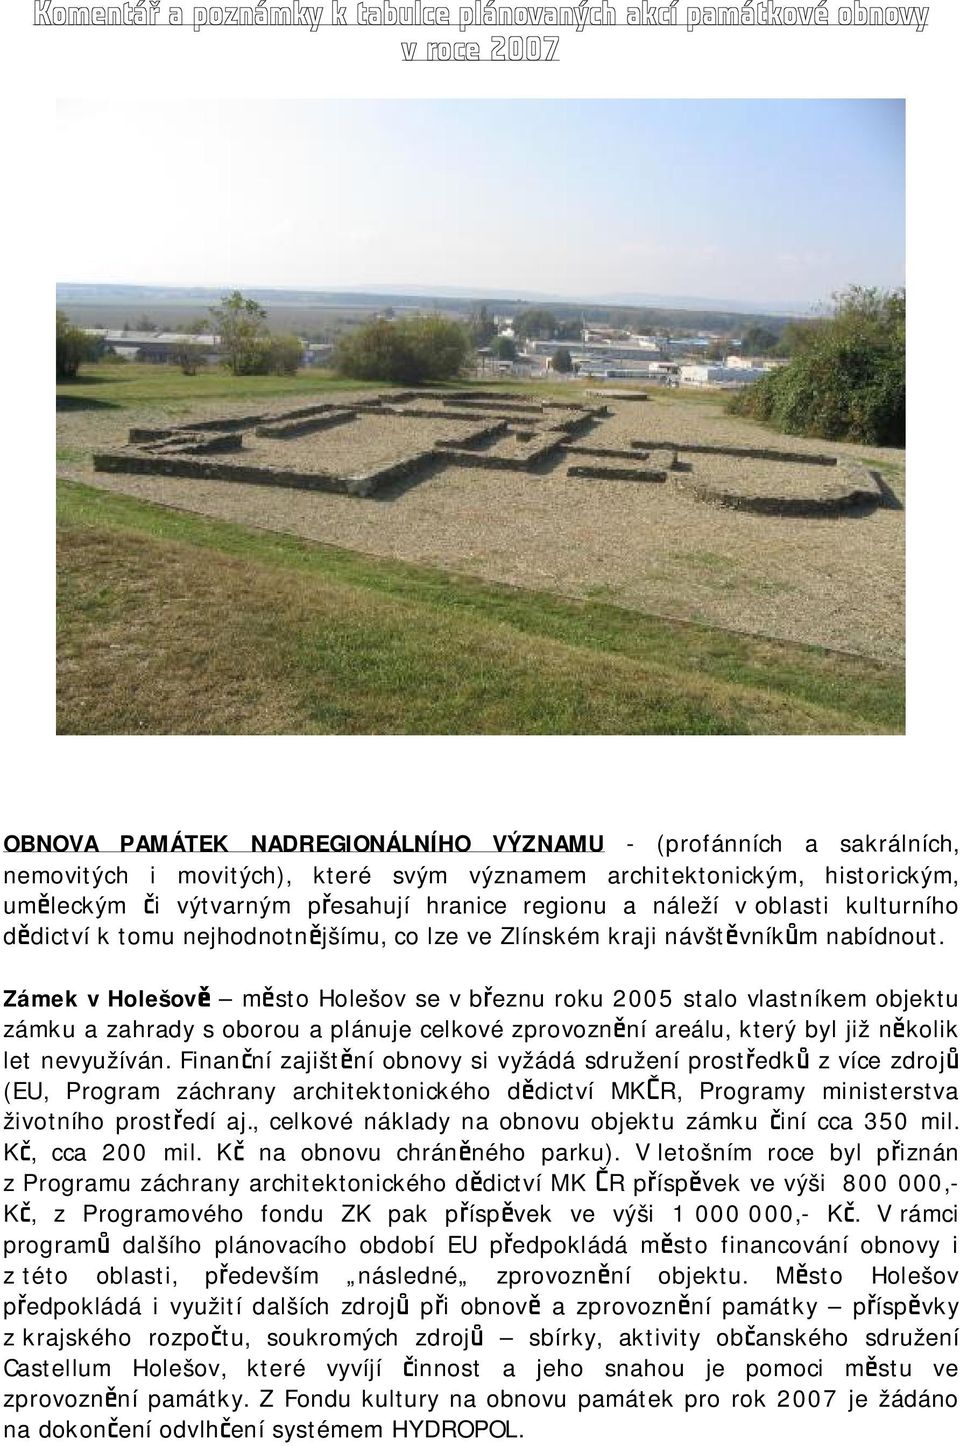 Zámek v Holešově město Holešov se v březnu roku 2005 stalo vlastníkem objektu zámku a zahrady s oborou a plánuje celkové zprovoznění areálu, který byl již několik let nevyužíván.